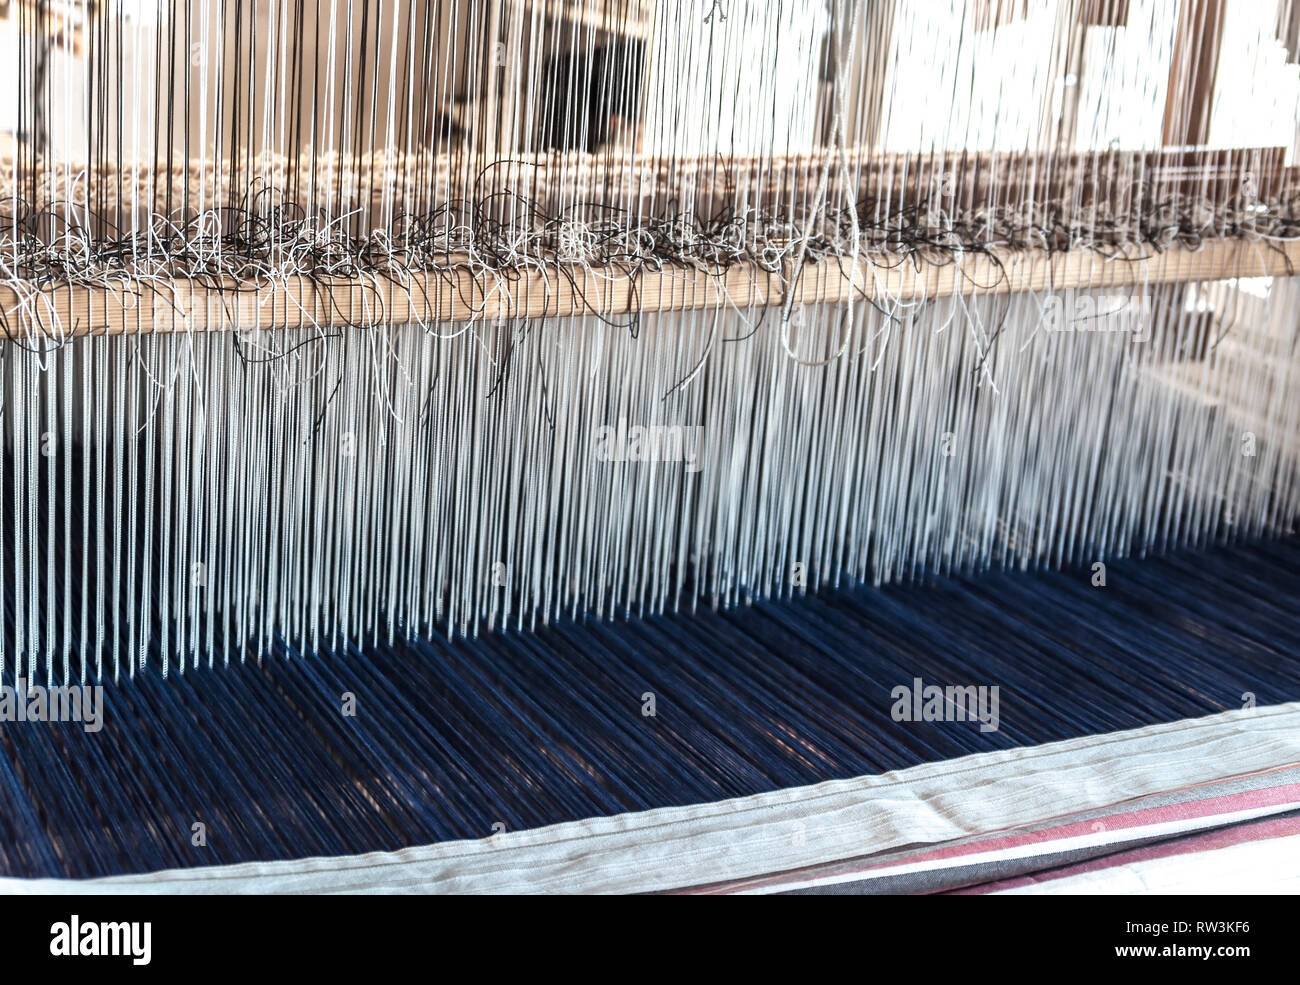 Détail d'un ancien métier à tisser traditionnel vintage avec de nombreuses cordes de coton liée à un cadre en bois comme un outil de fabrication pour travaux manuels professionnels Banque D'Images